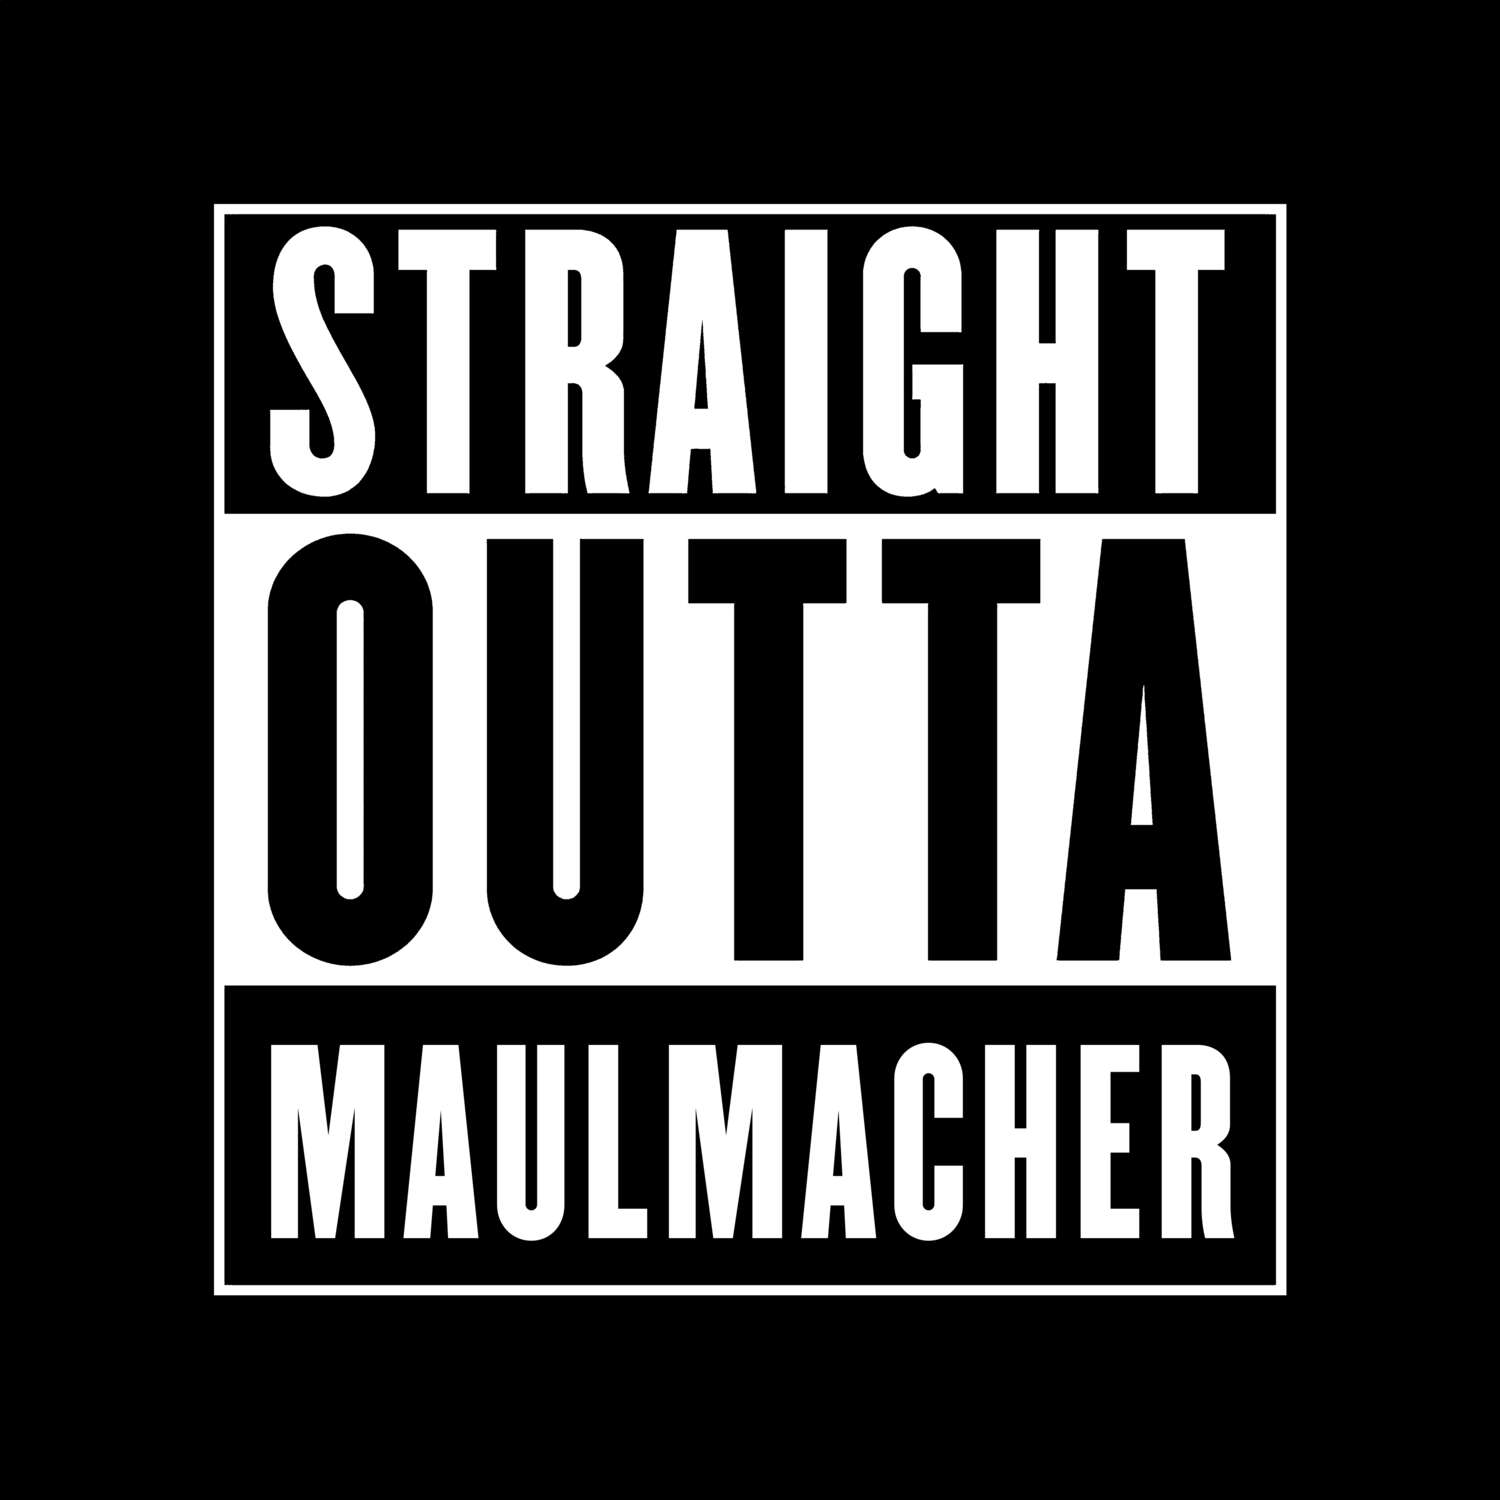 Maulmacher T-Shirt »Straight Outta«